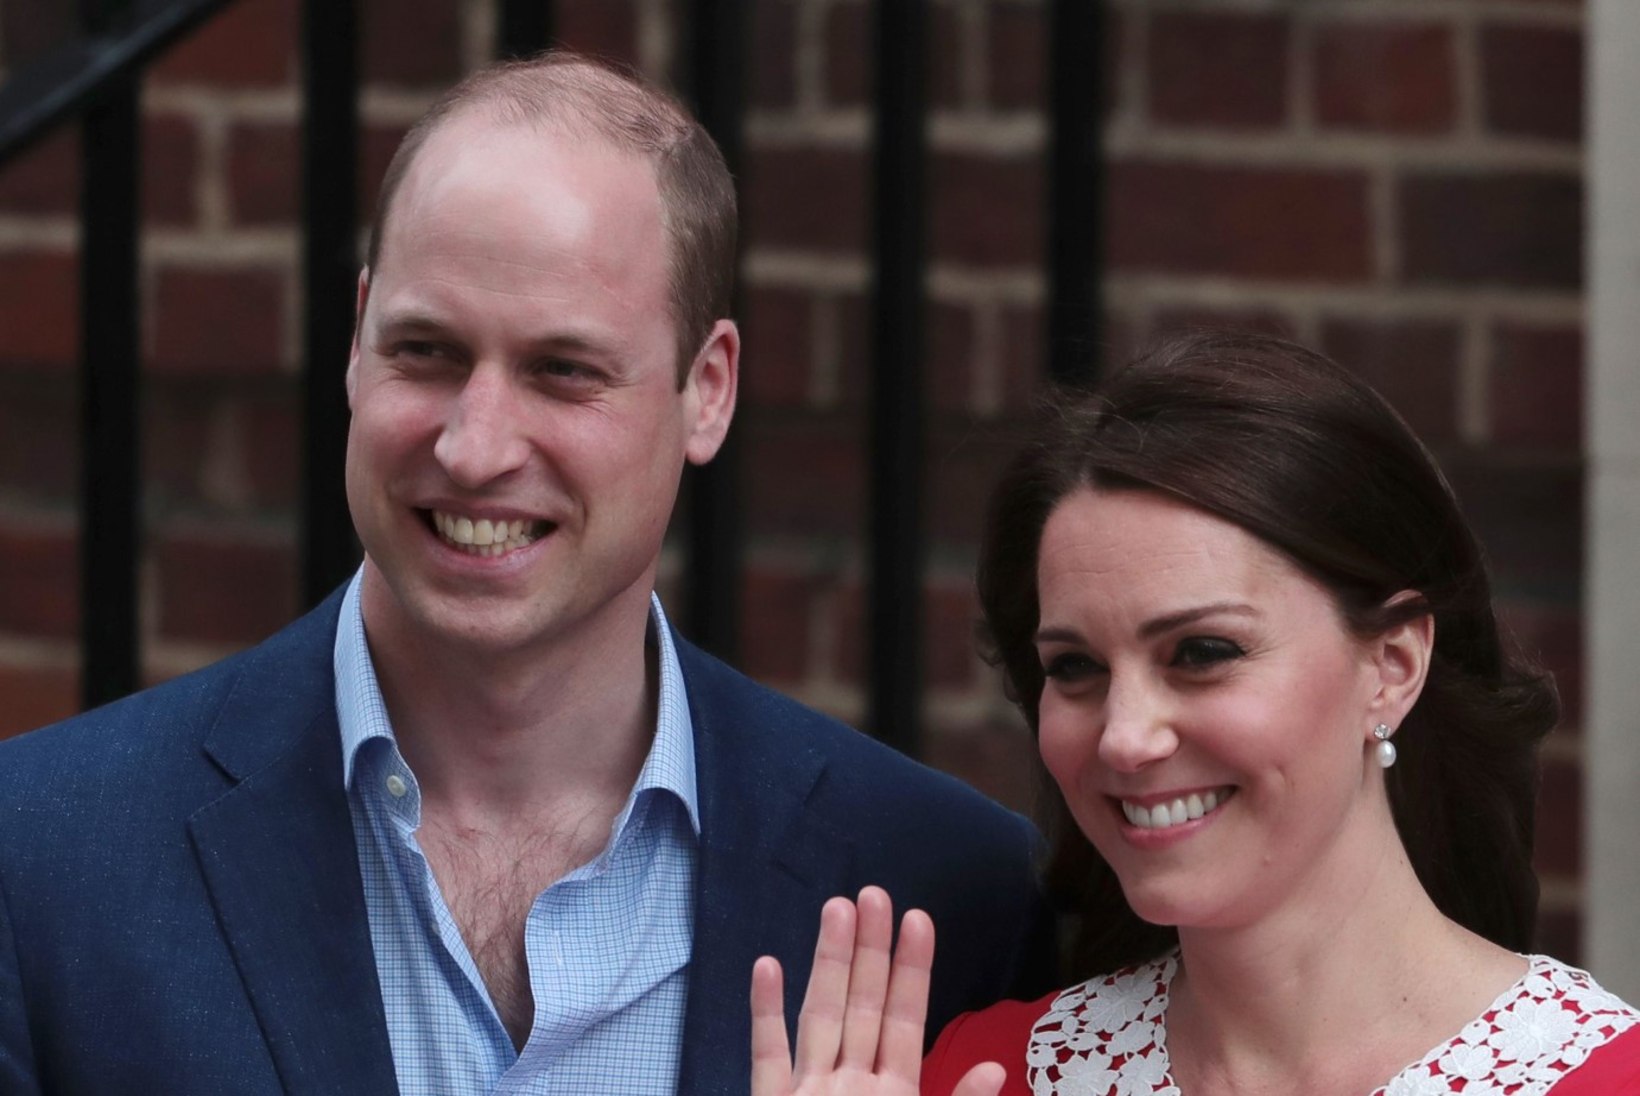 FOTOD | Kate ja William näitasid maailmale uut väikest printsi